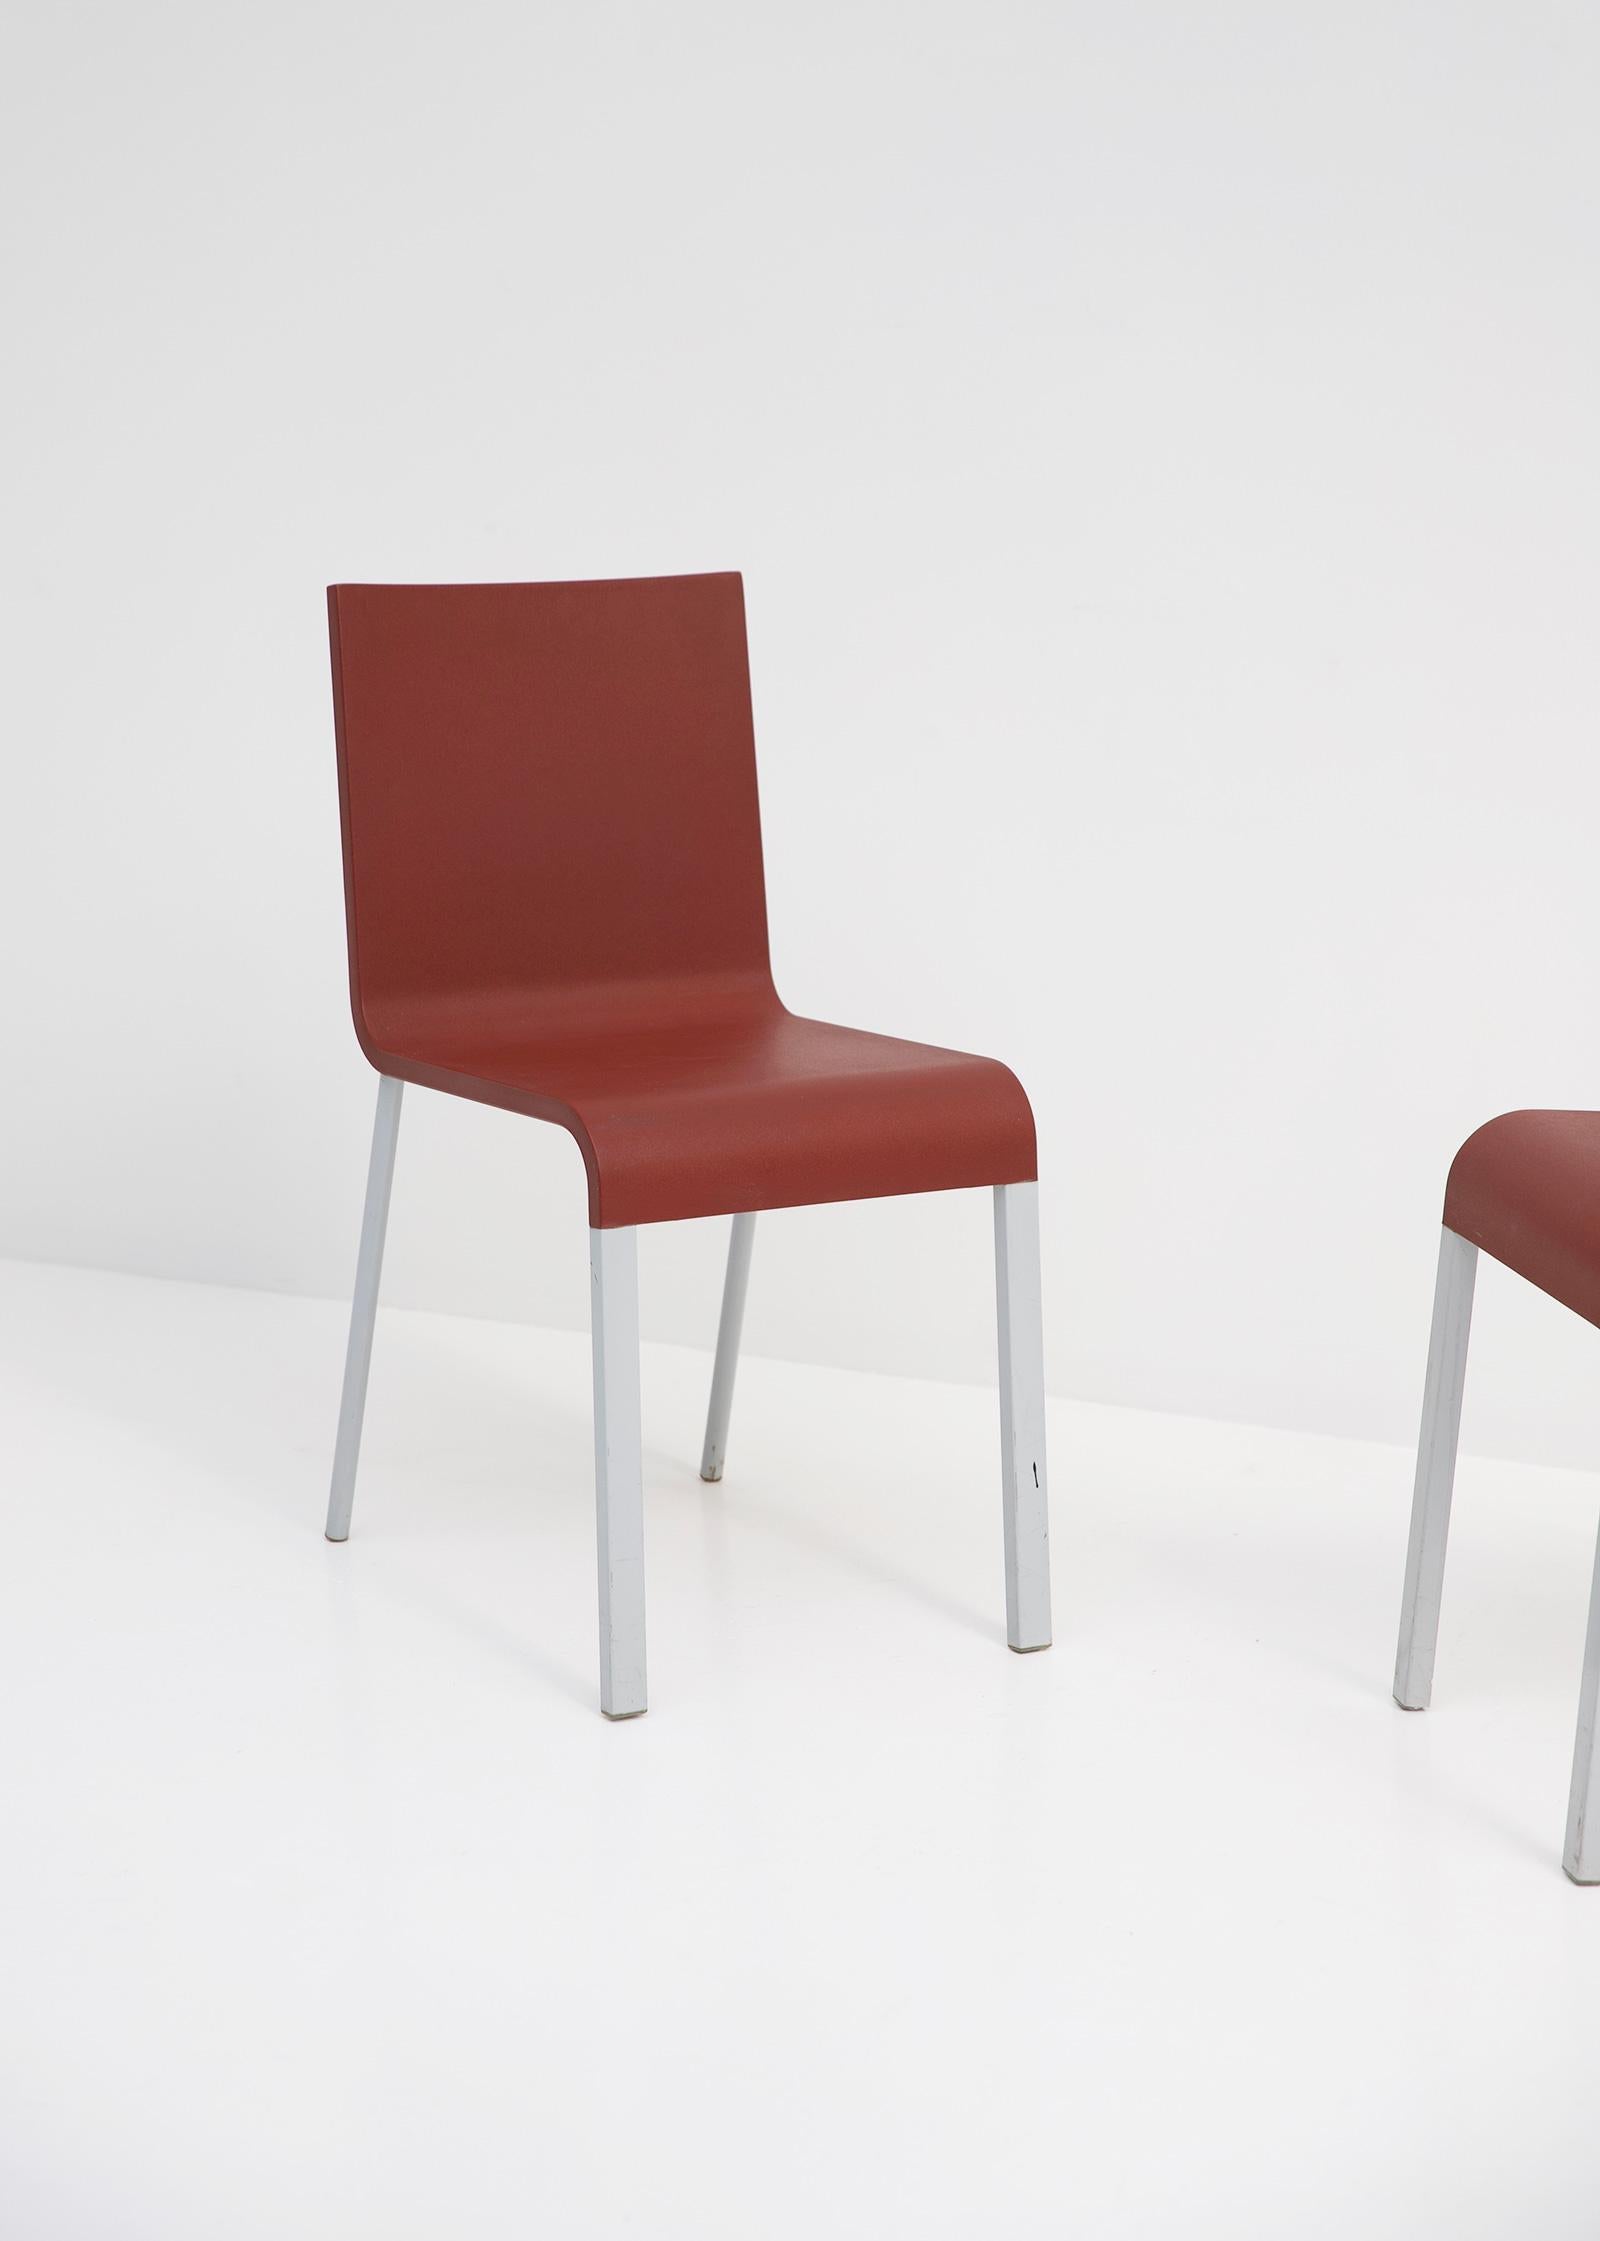 Maarten Van Severen a étudié l'architecture à l'Académie des arts de Gand. En tant que designer, il s'est consacré à l'examen des types de meubles de base : chaise, table, chaise longue, étagère, armoire. Van Severen a développé des solutions